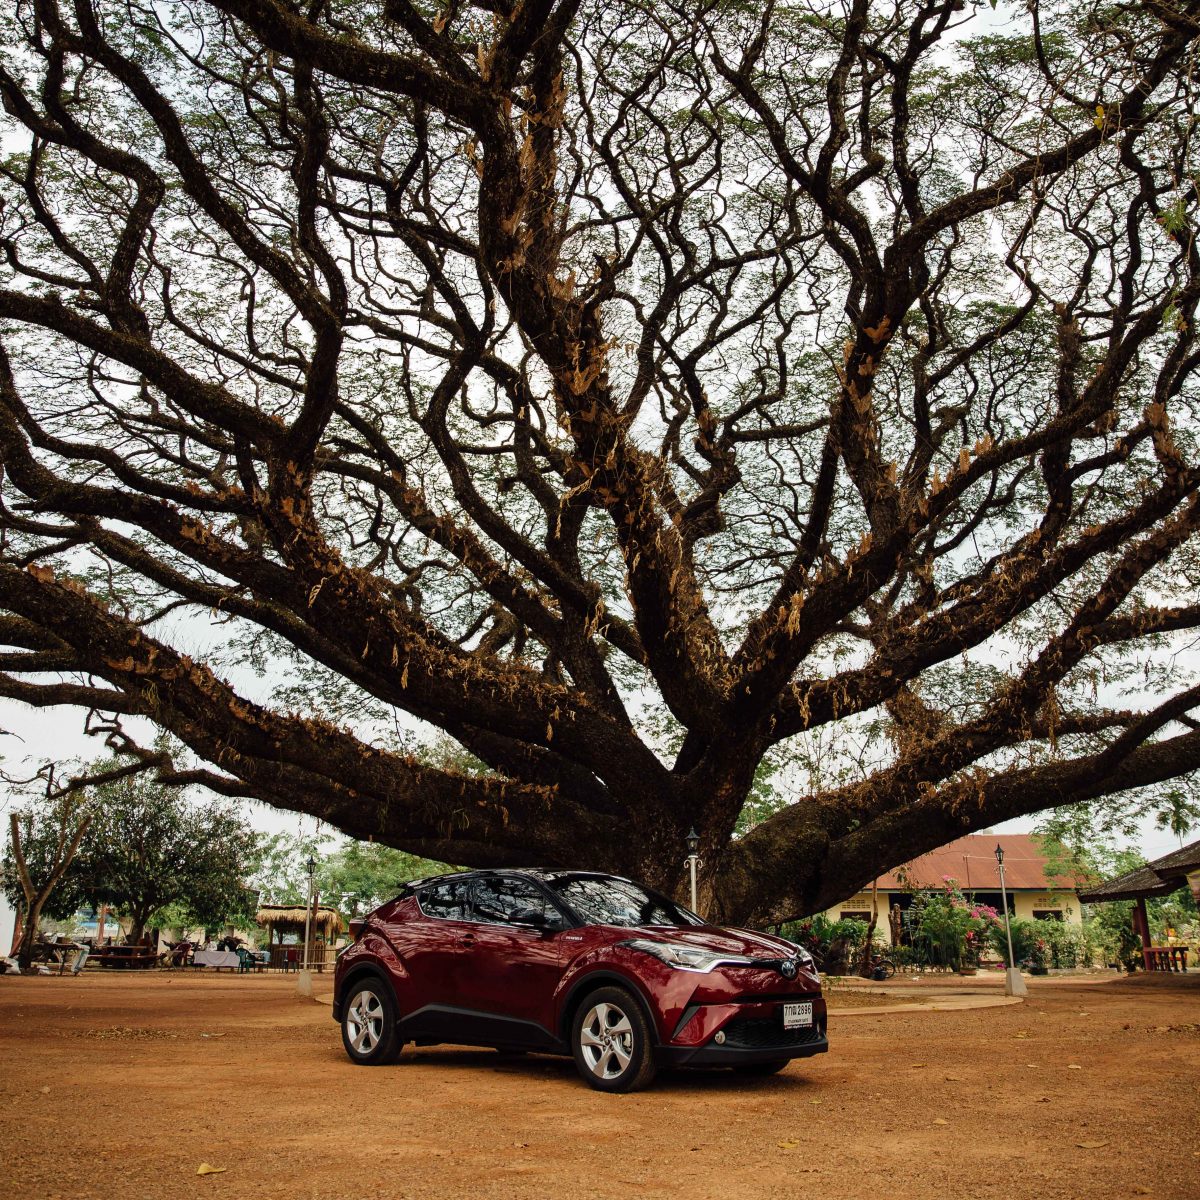 Tree, Car